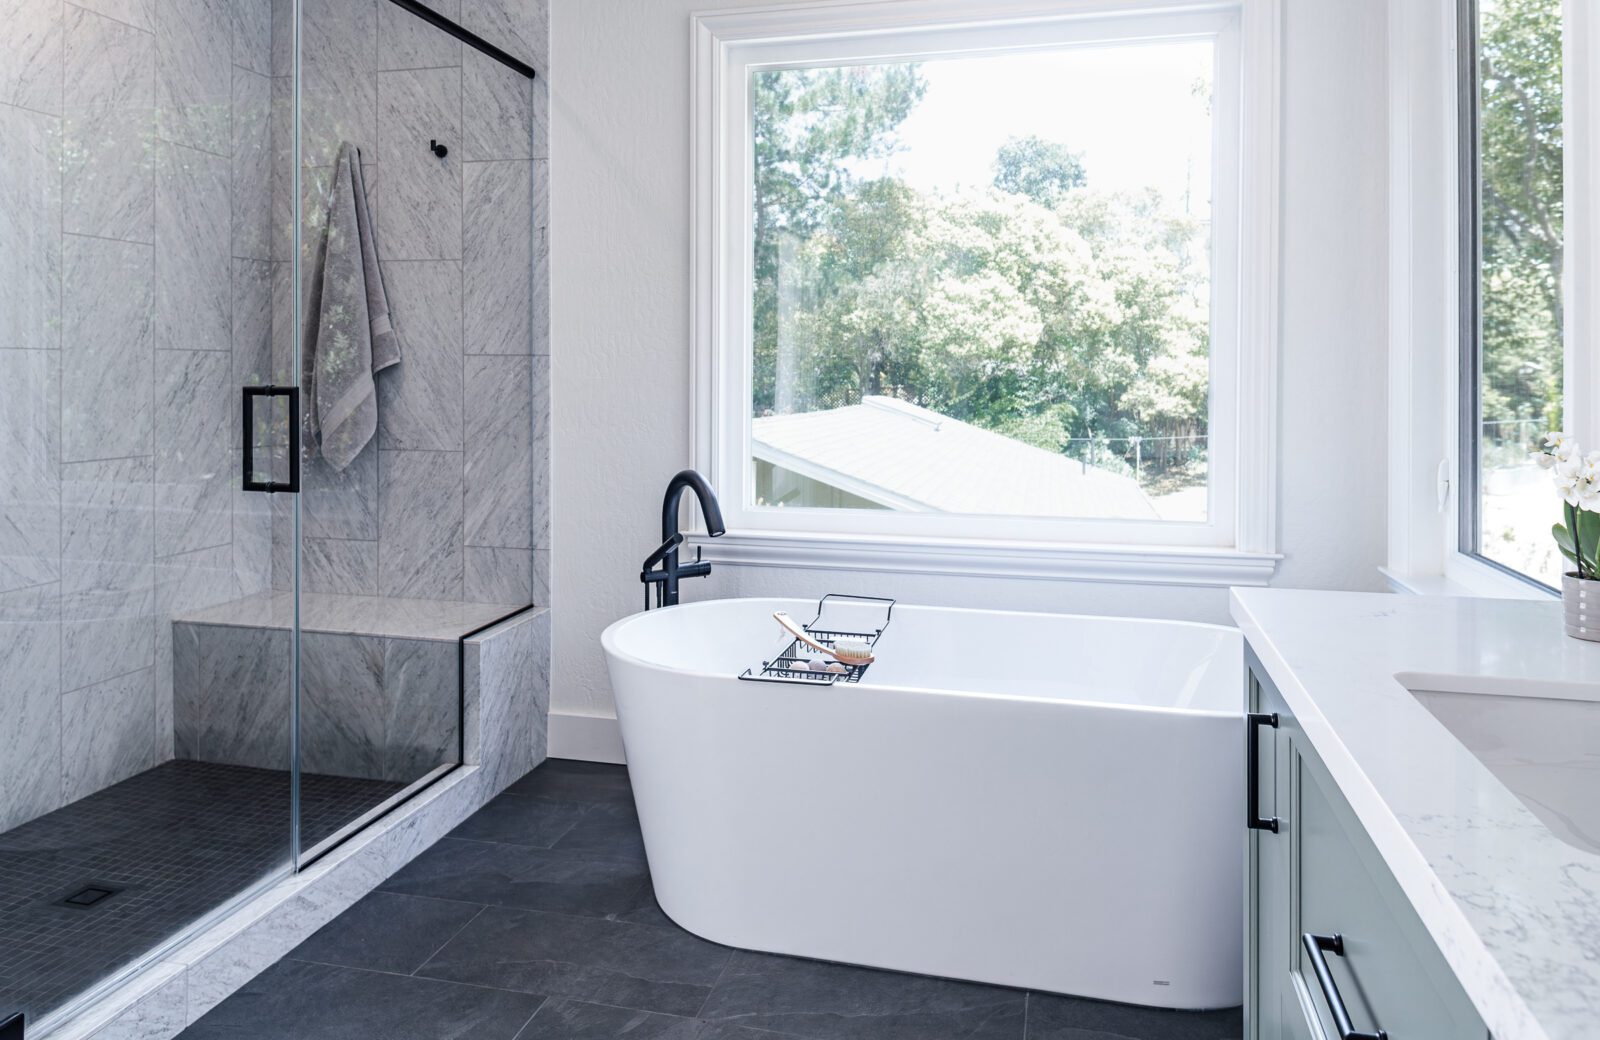 Primary bathroom remodel, freestanding white tub, marble shower tile, slate floor